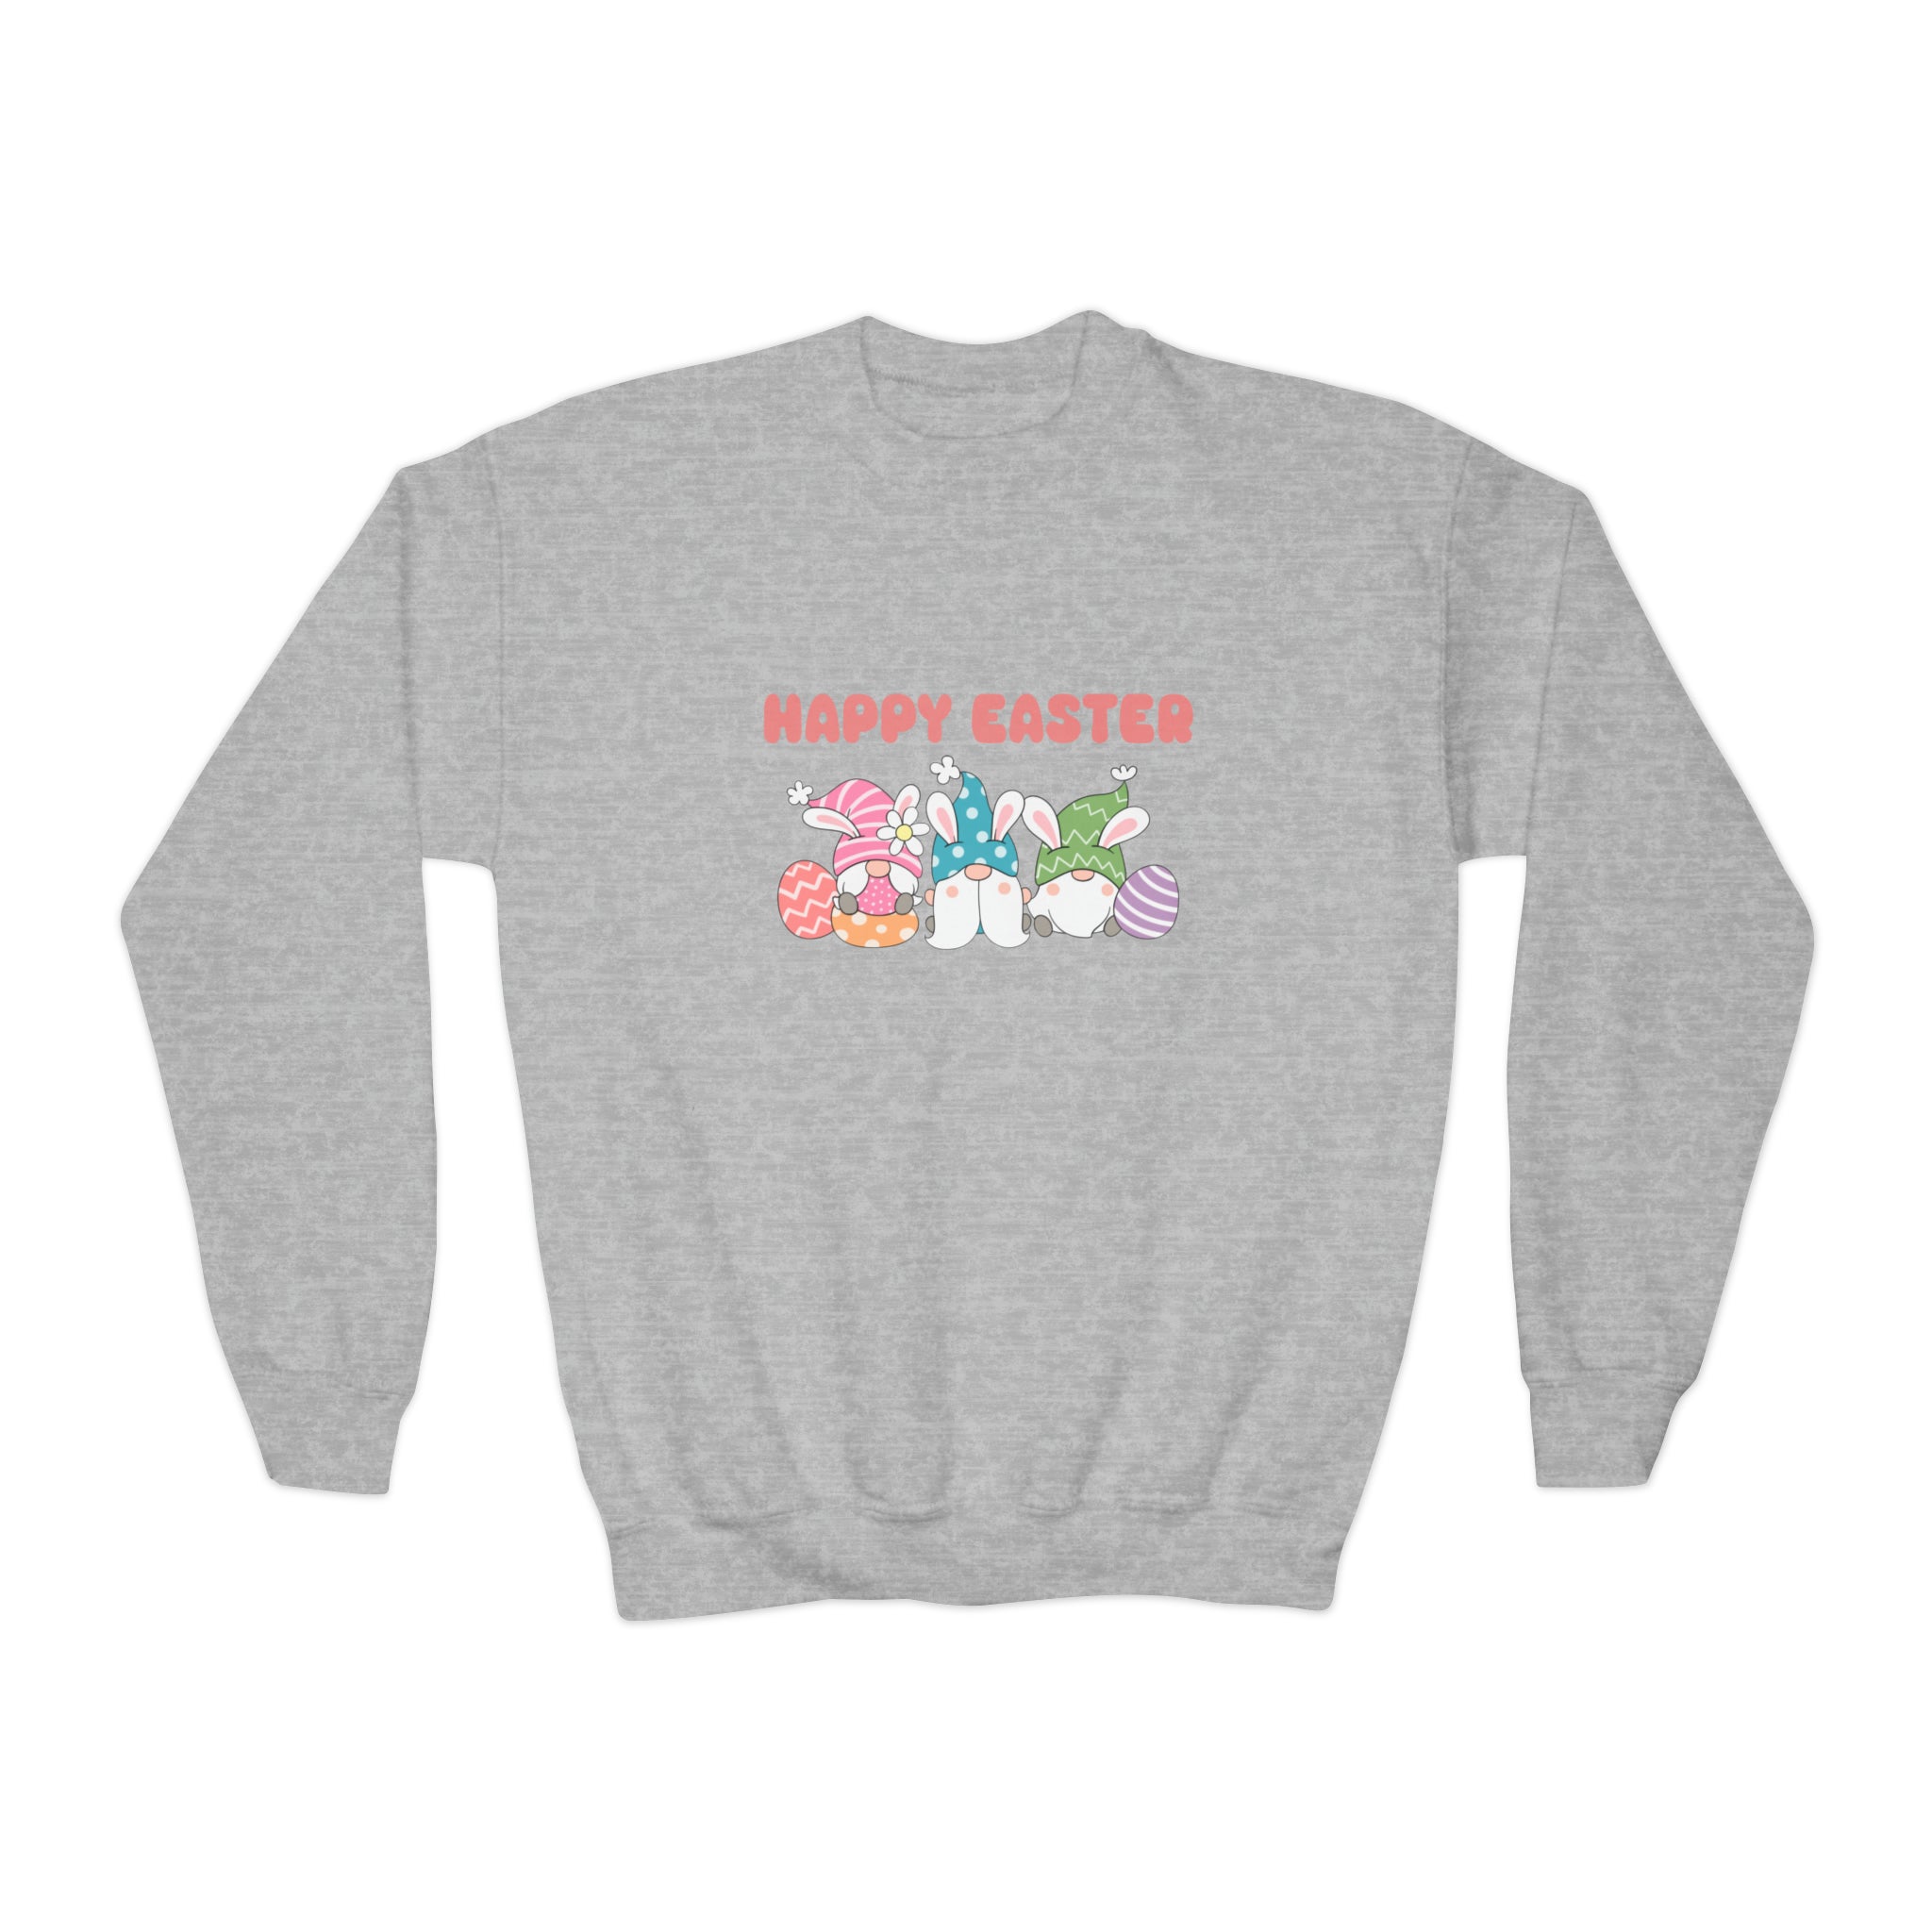 Easter Sweatshirt For Girl Tween Girl